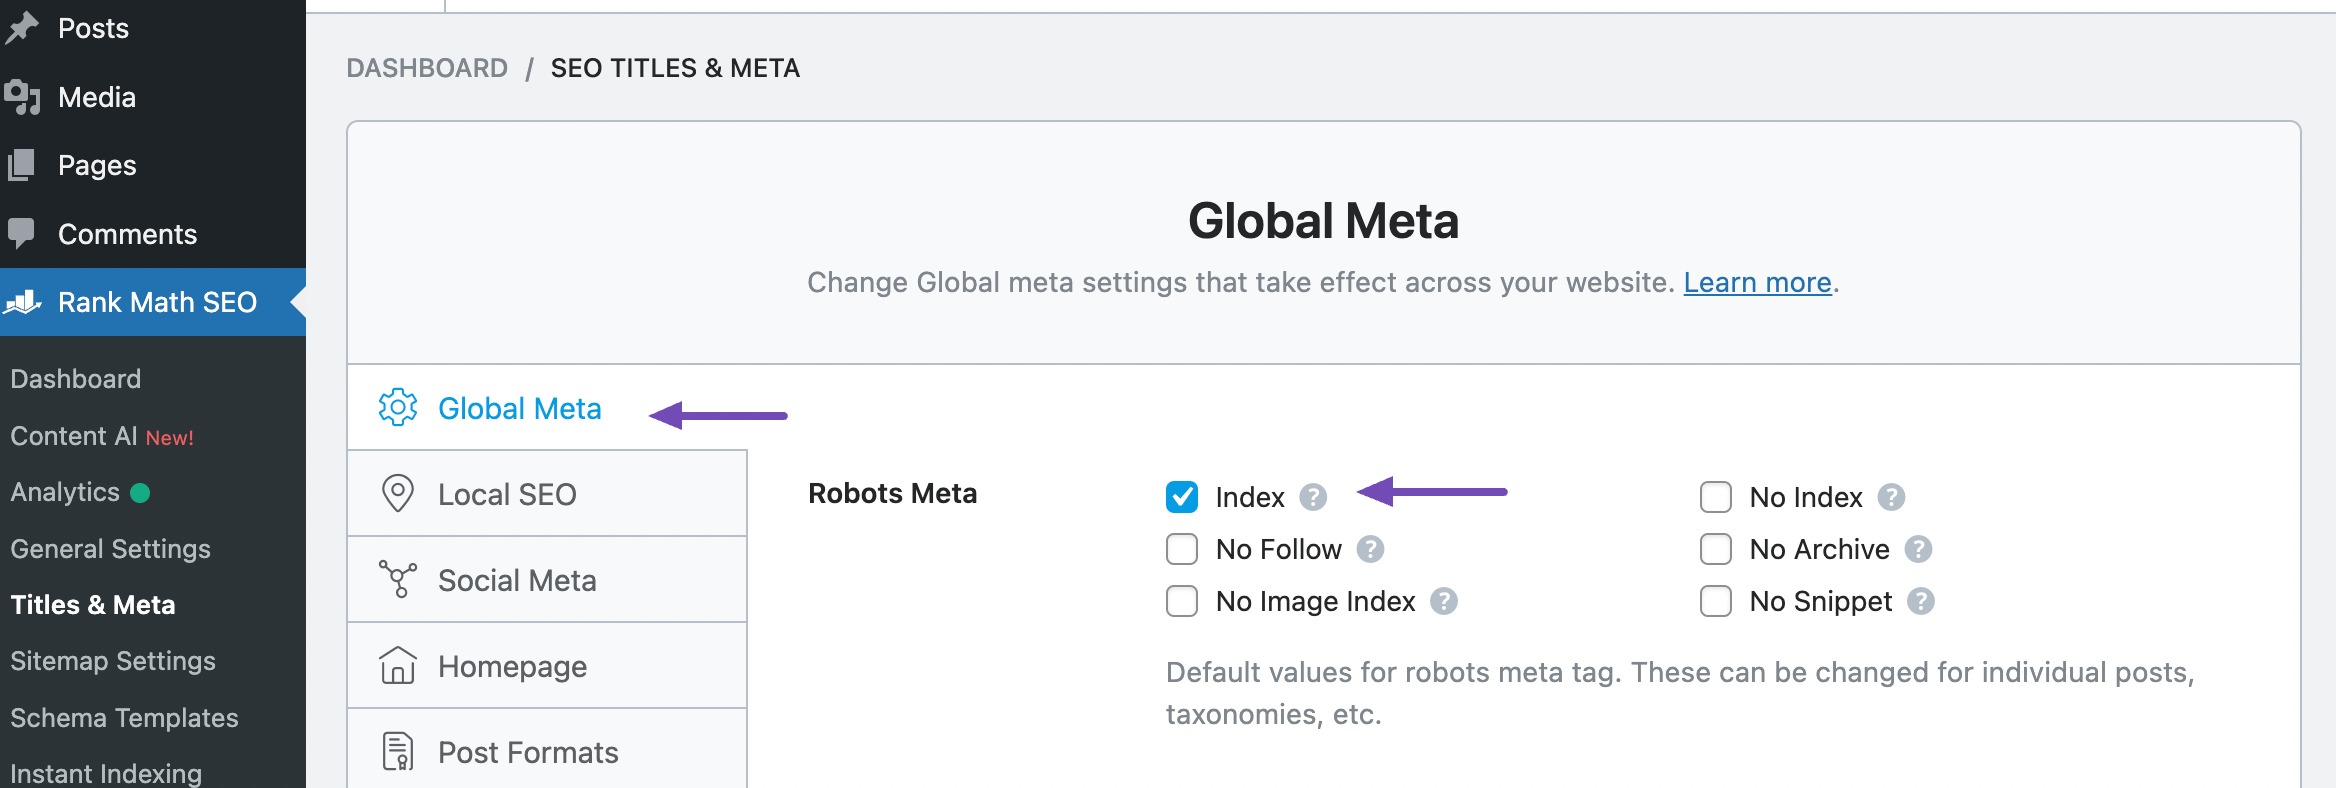 Globale Meta auf Index gesetzt